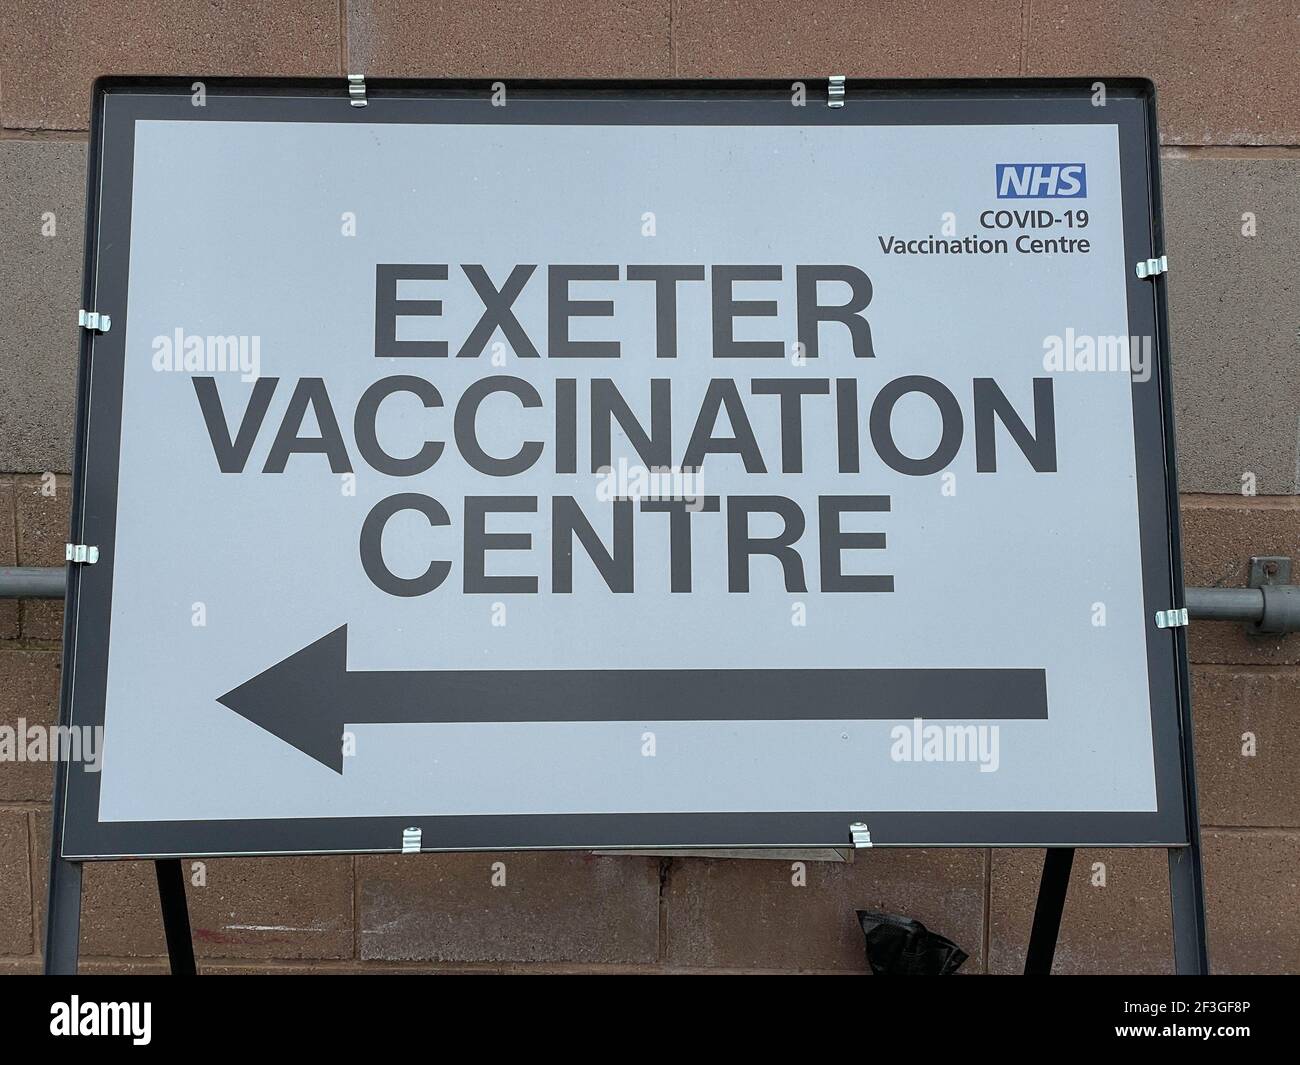 Panneau de métal sur pied avec une flèche pointant vers le NHS Covid-19 Exeter vaccination Center, Devon, Angleterre, Royaume-Uni Banque D'Images